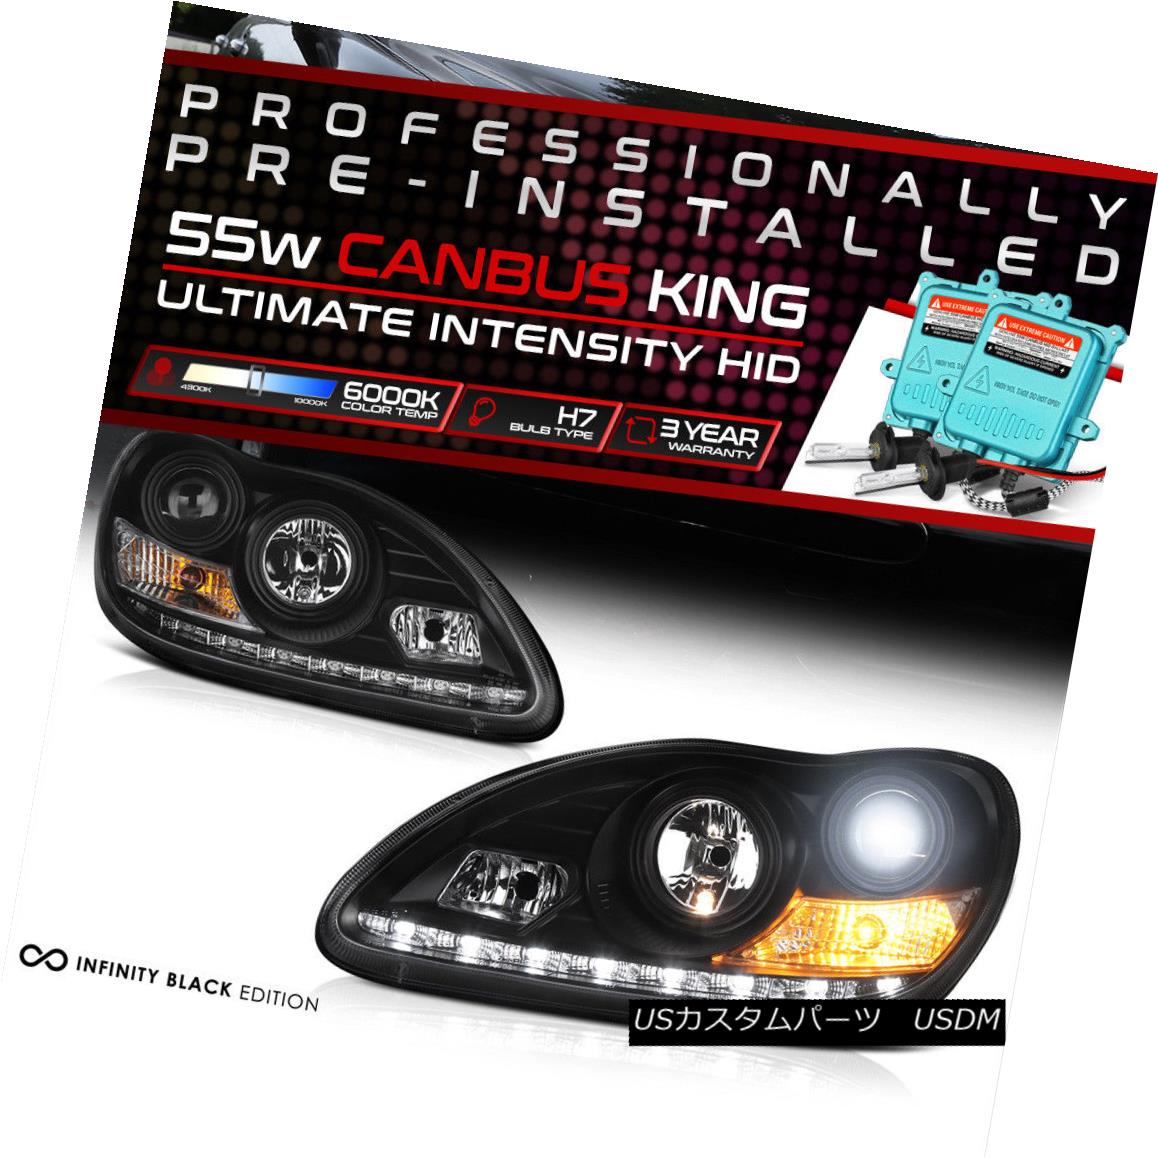 ライト ランプ 特売 H7 S600 S500 W2 Signal Headlights Black Projector New Beam Low Hid Built In ヘッドライト 内蔵hidロービーム H7 S600 S500 新しいプロジェクターブラックヘッドライト信号w2 Kwakuku Com